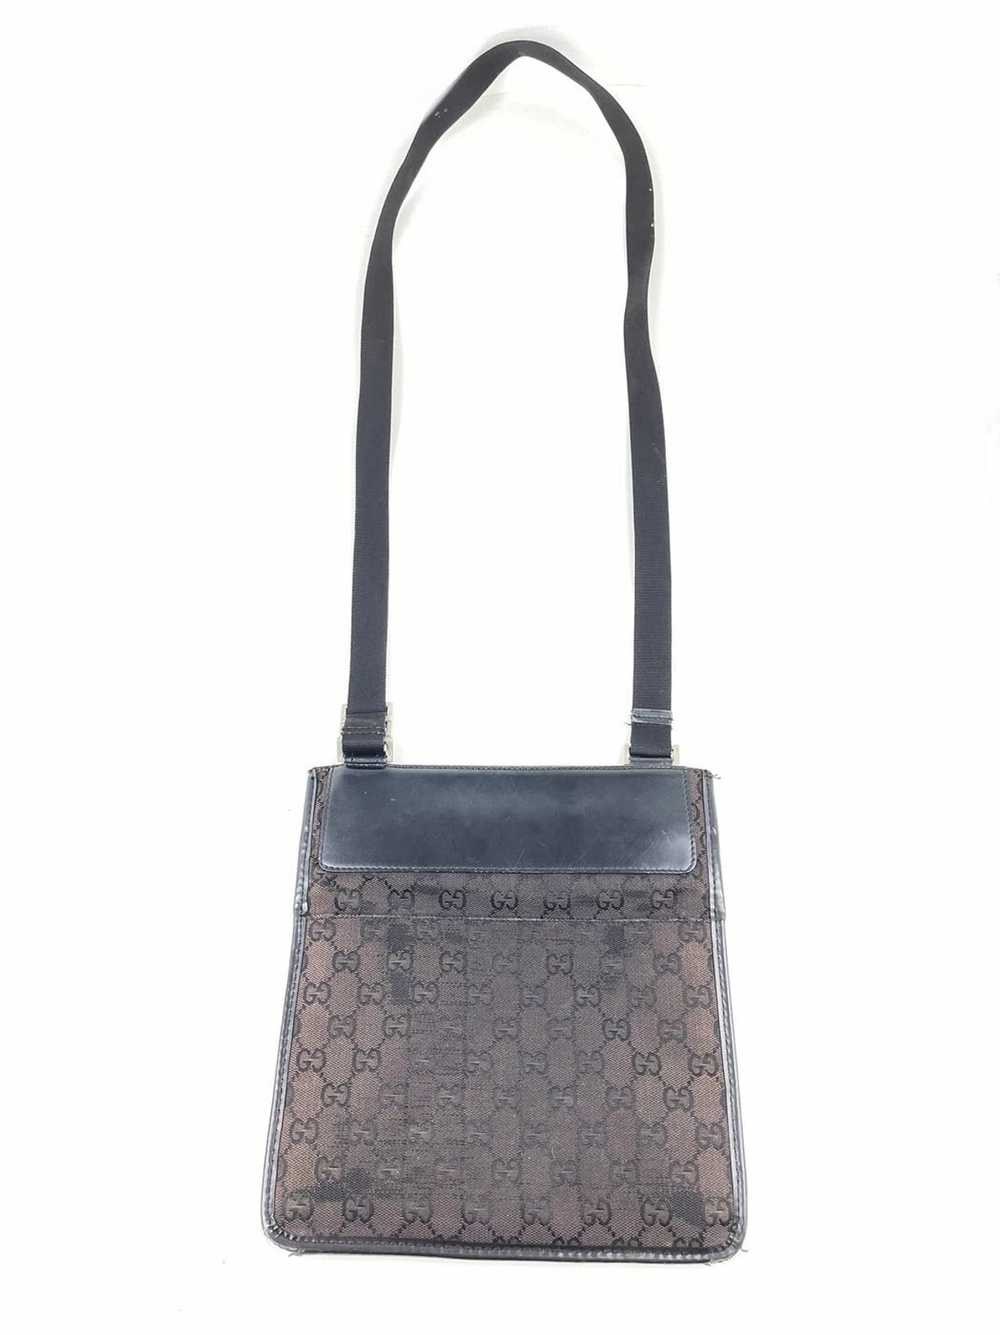 Gucci Monogram Shoulder Bag - image 9